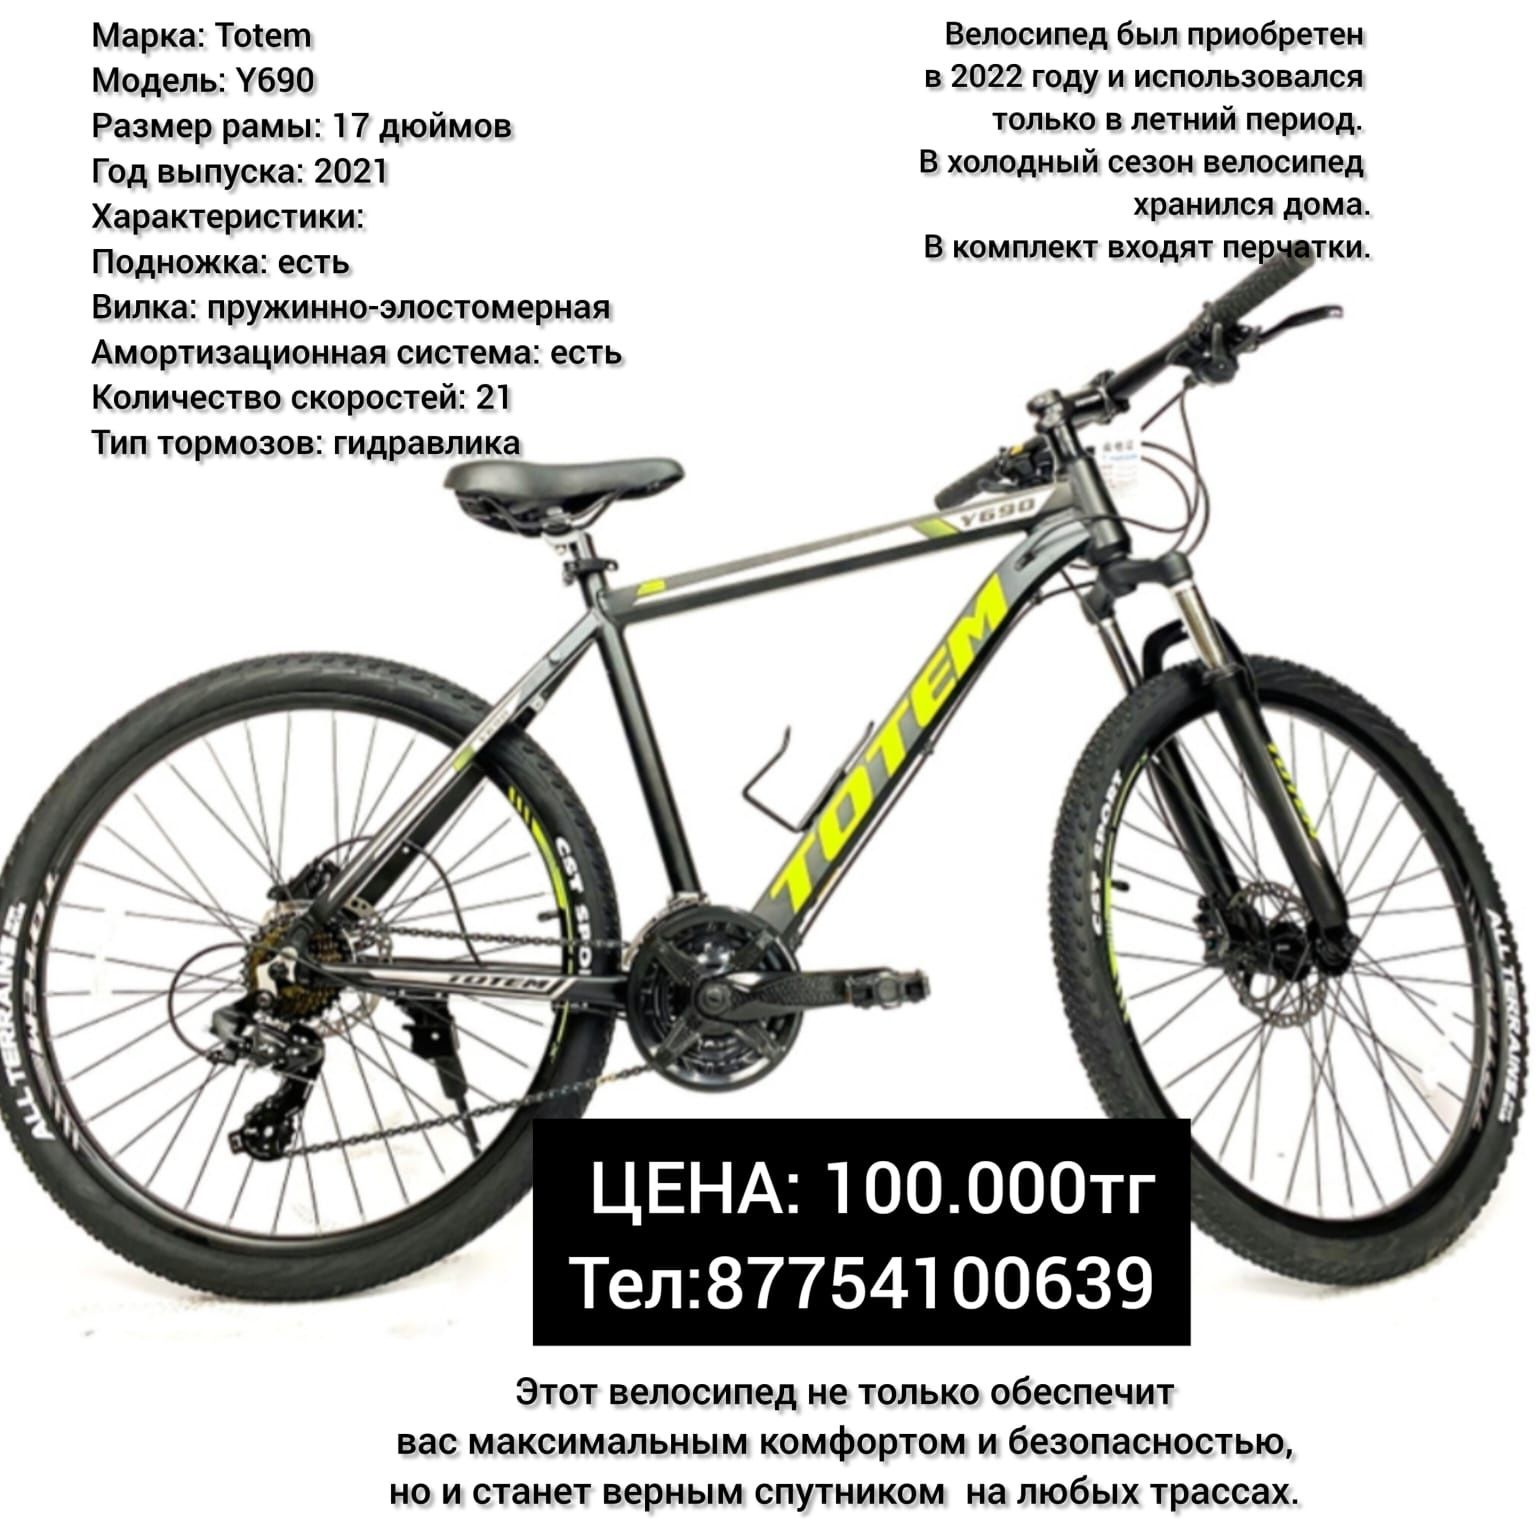 TOTEM 690, горный велосипед